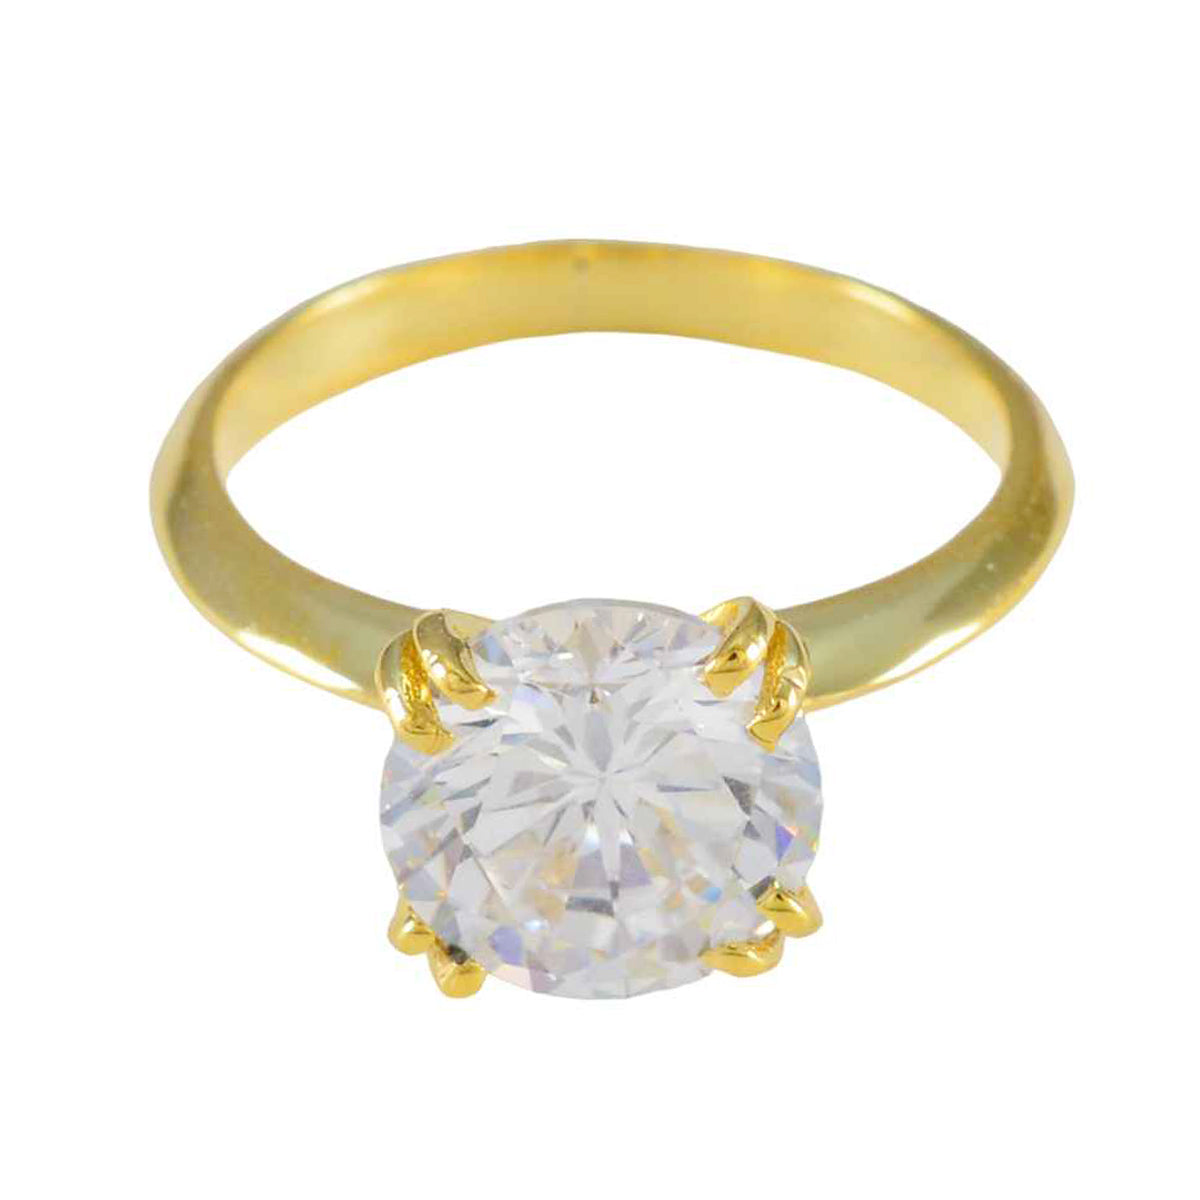 anello di fidanzamento riyo in argento sfuso con placcatura in oro giallo con pietra bianca cz a forma rotonda con montatura a griffe